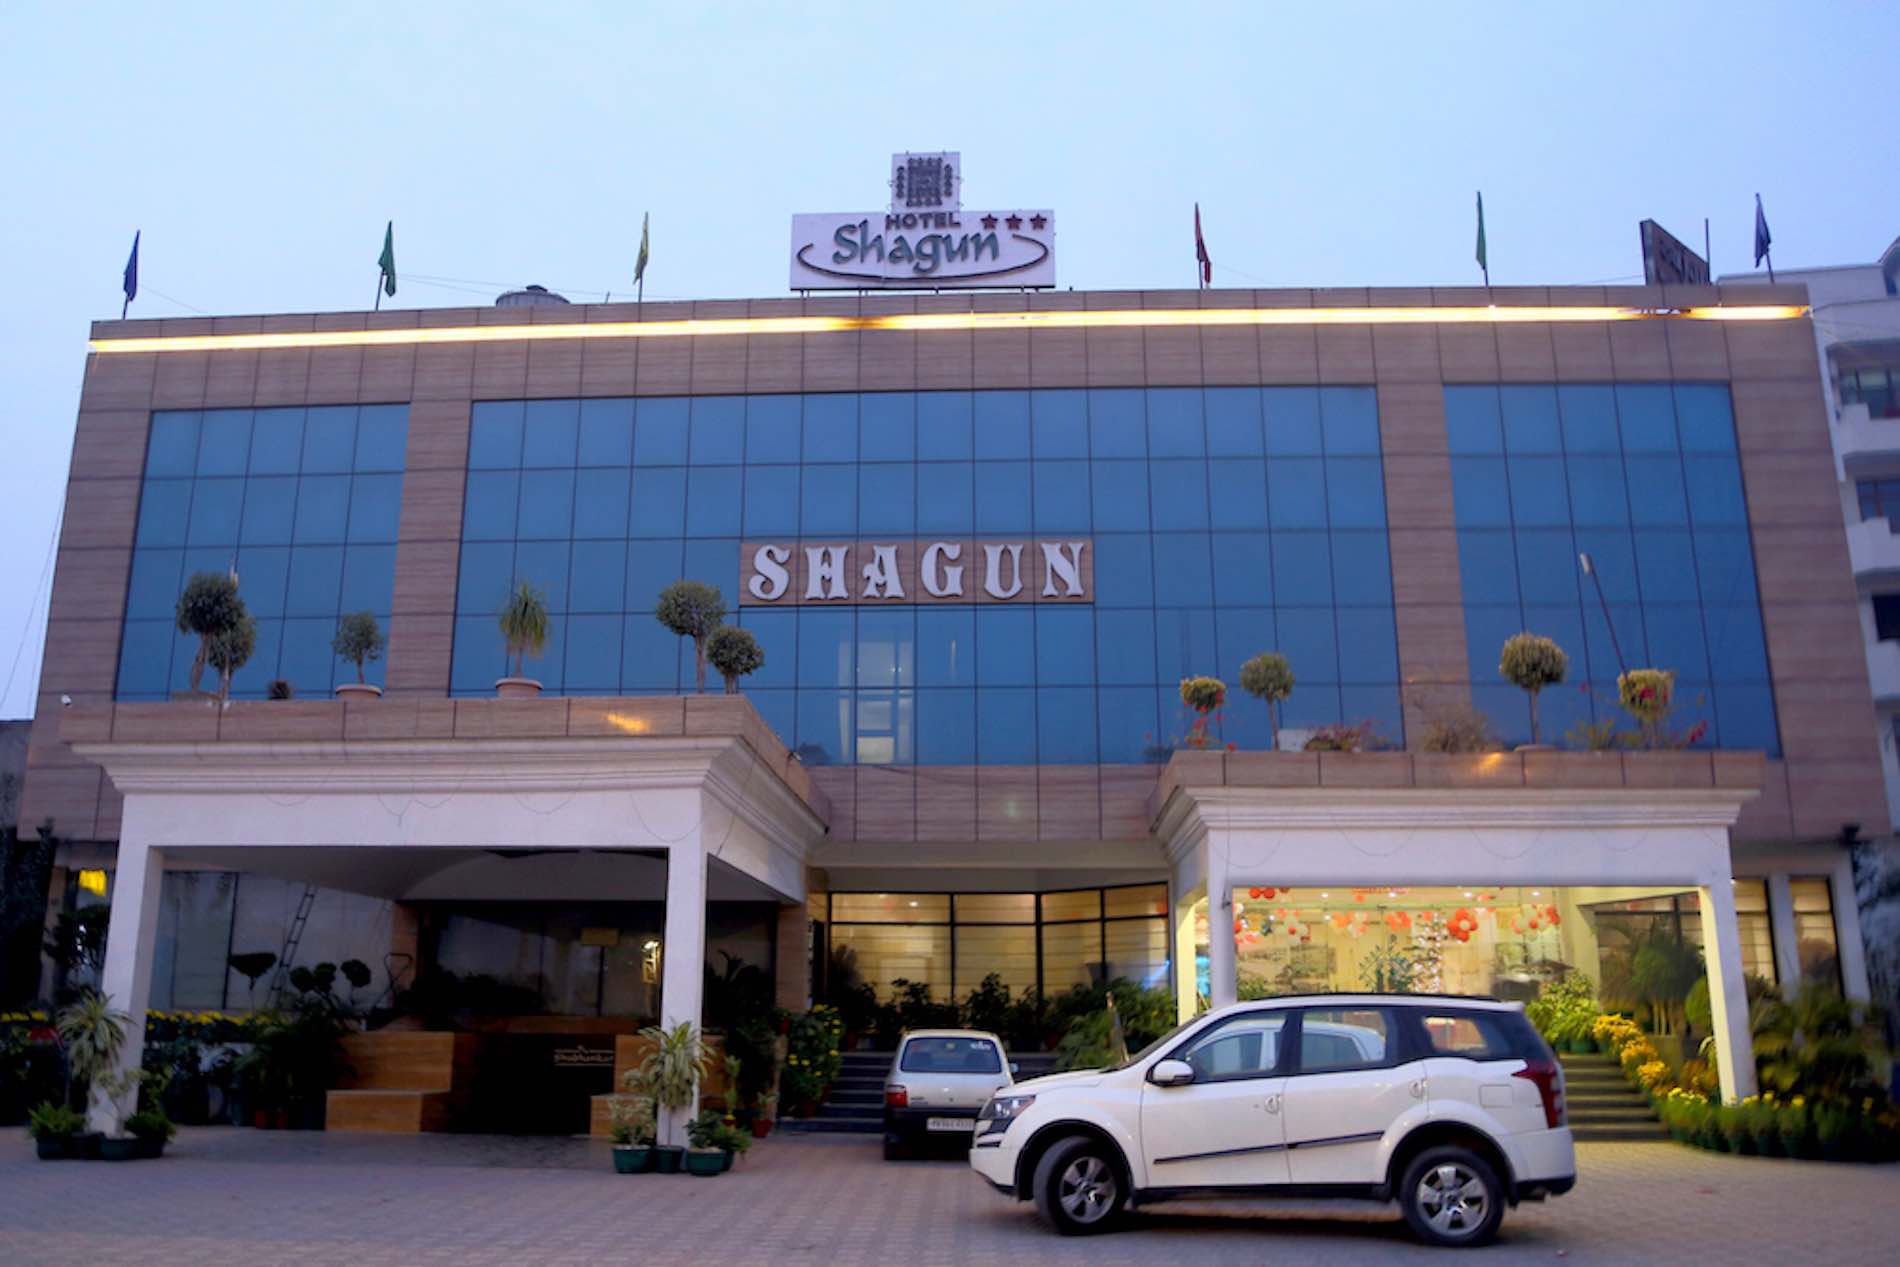 Shagun hotel front